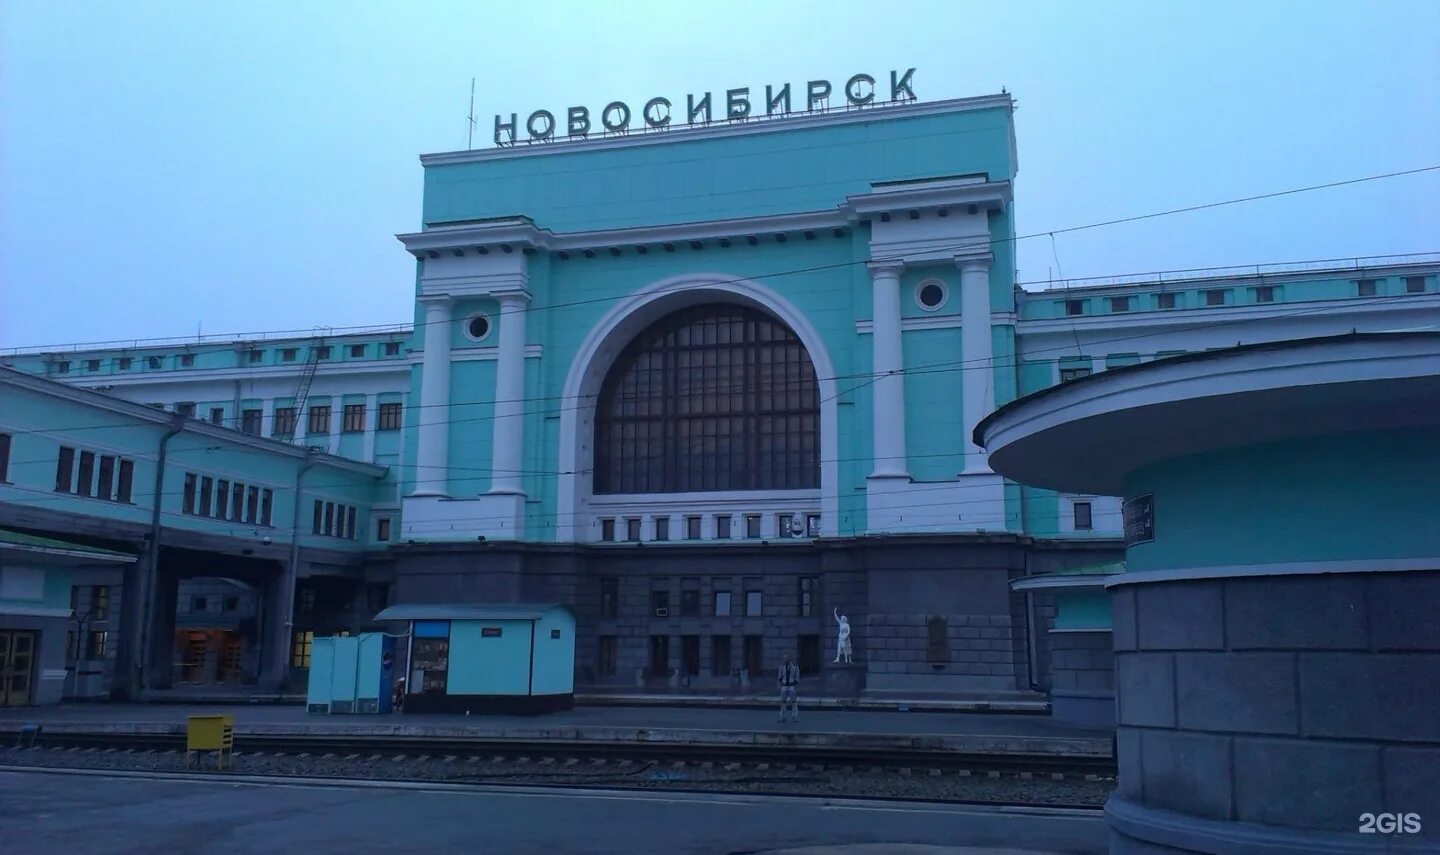 Ж/Д вокзал Новосибирск. Станция Новосибирск-главный, Новосибирск. ЖД вокзал Новосибирск главный. Г Новосибирск ЖД вокзал главный. Сайт жд вокзала новосибирска